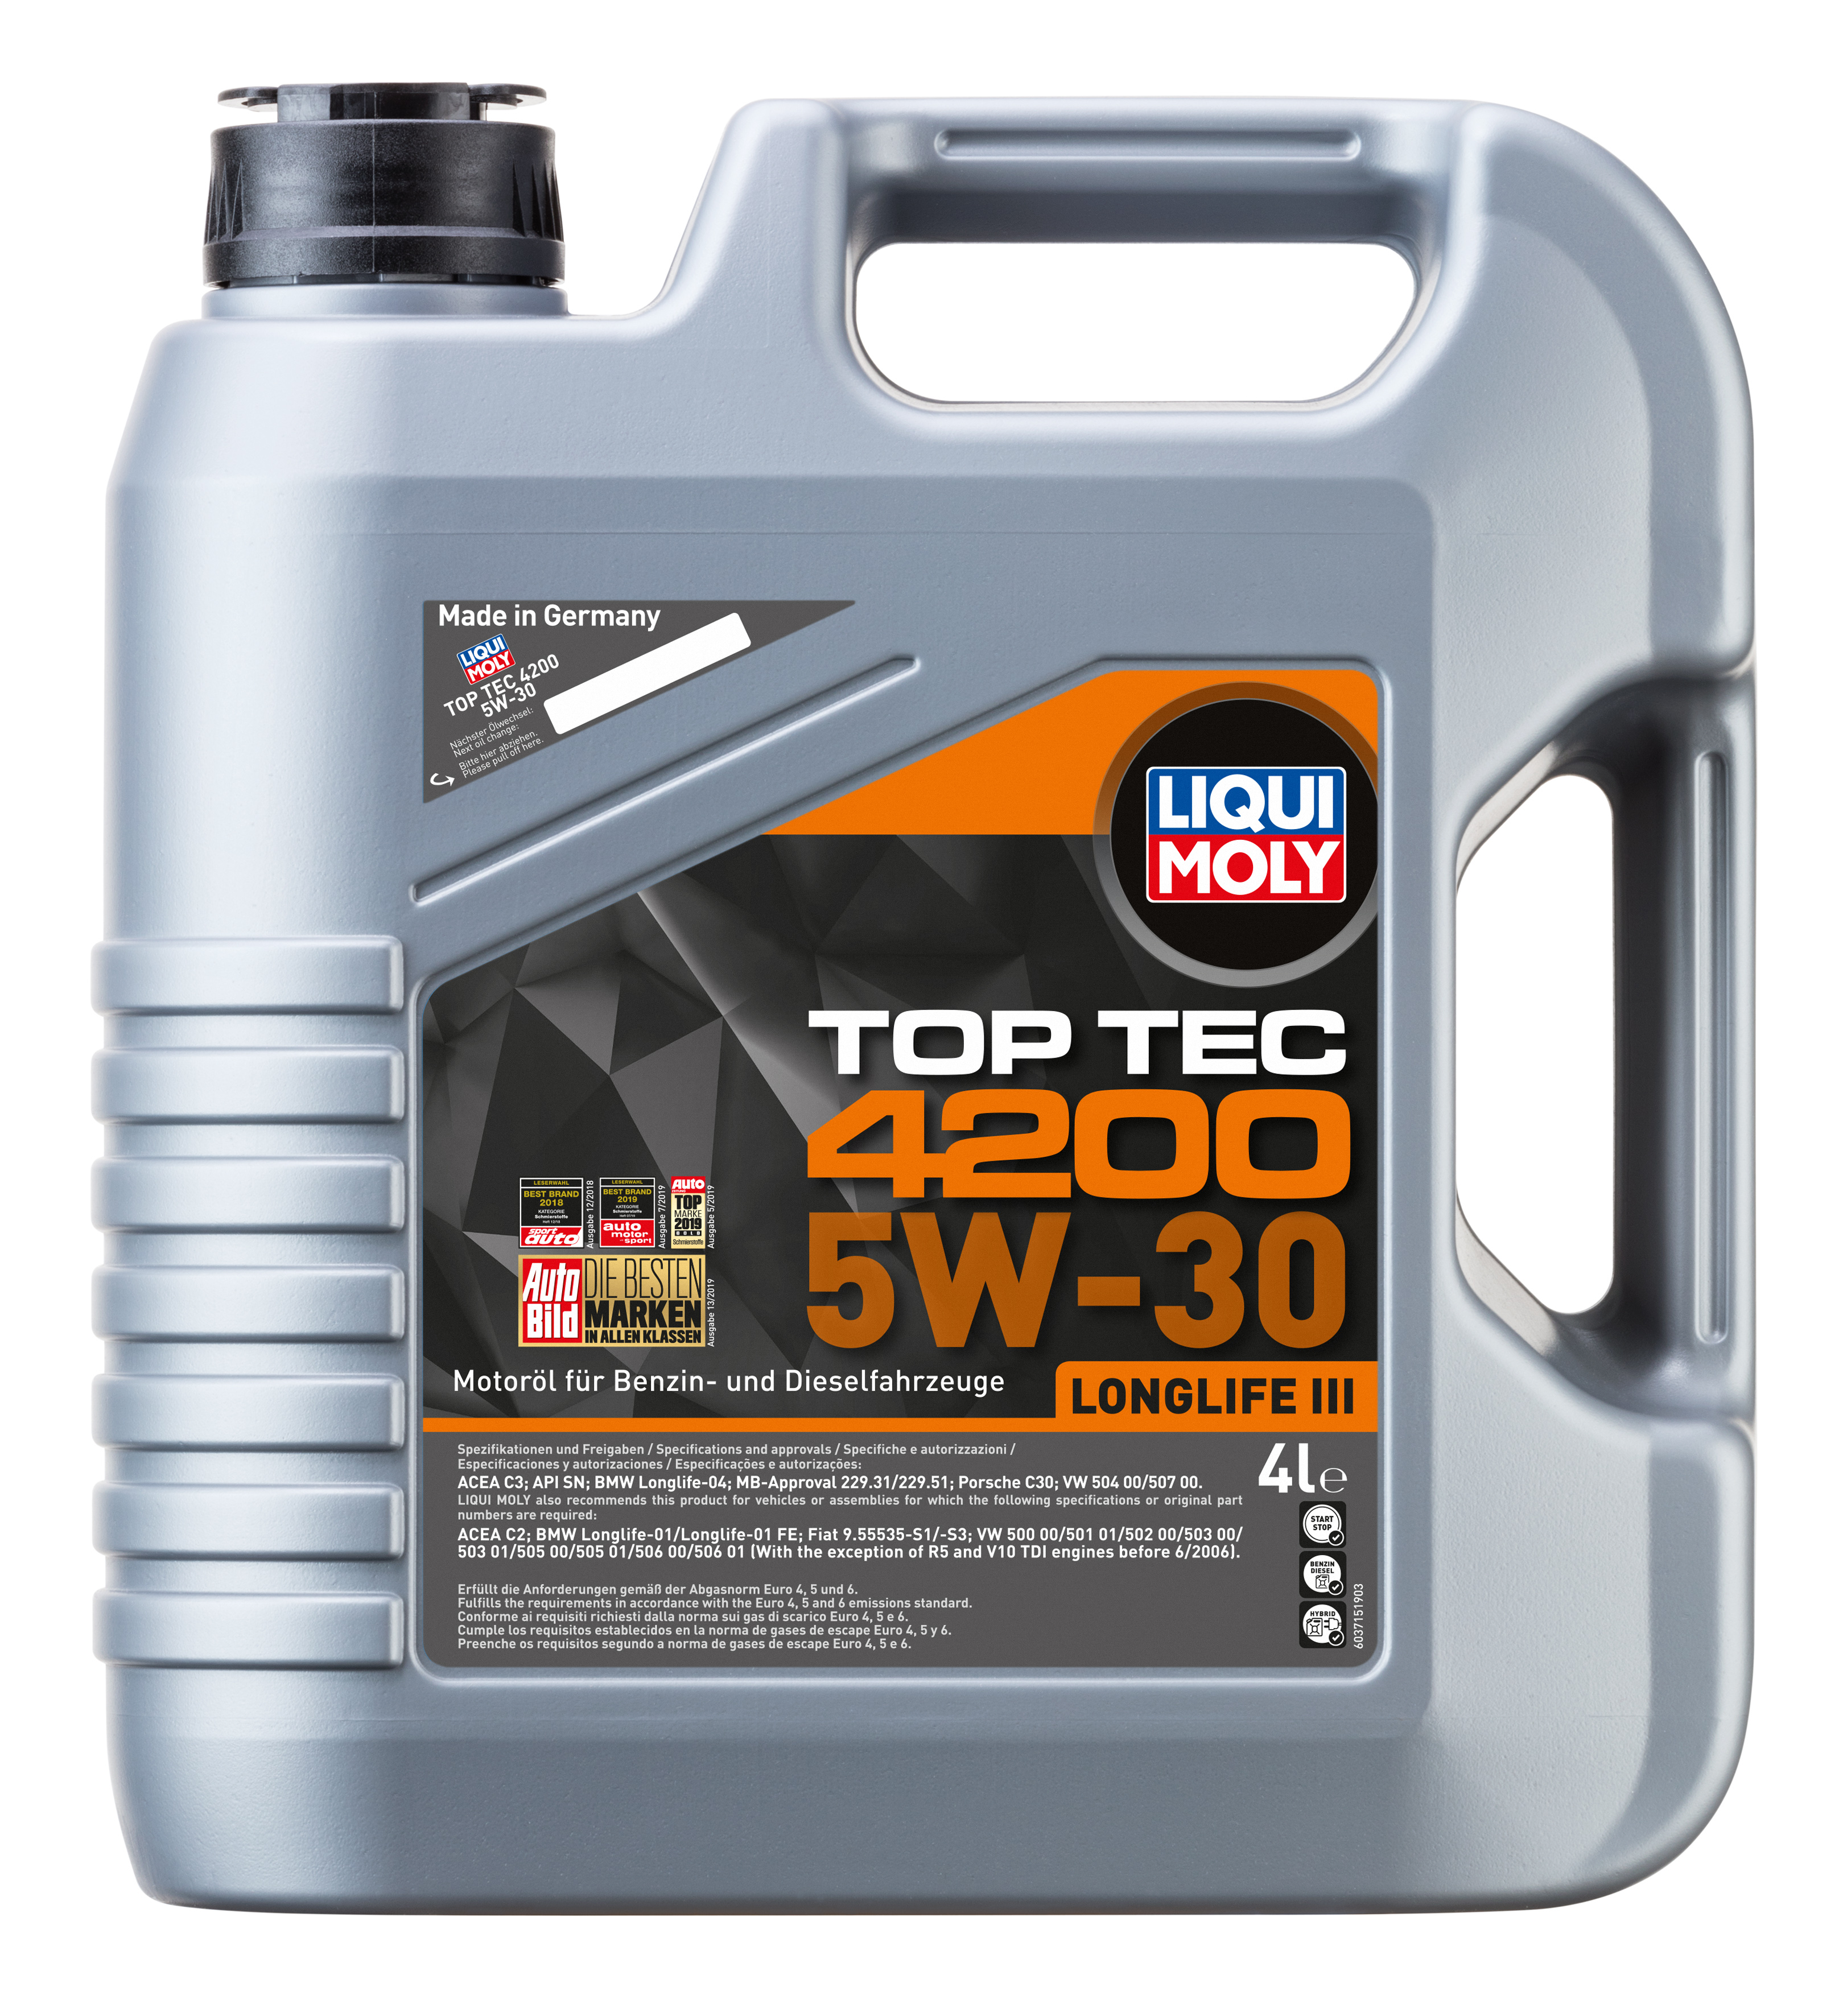 5w-30 Top Tec 4200 SP c3/c2 4л (НС-синт.мотор.масло) - Liqui Moly 3715